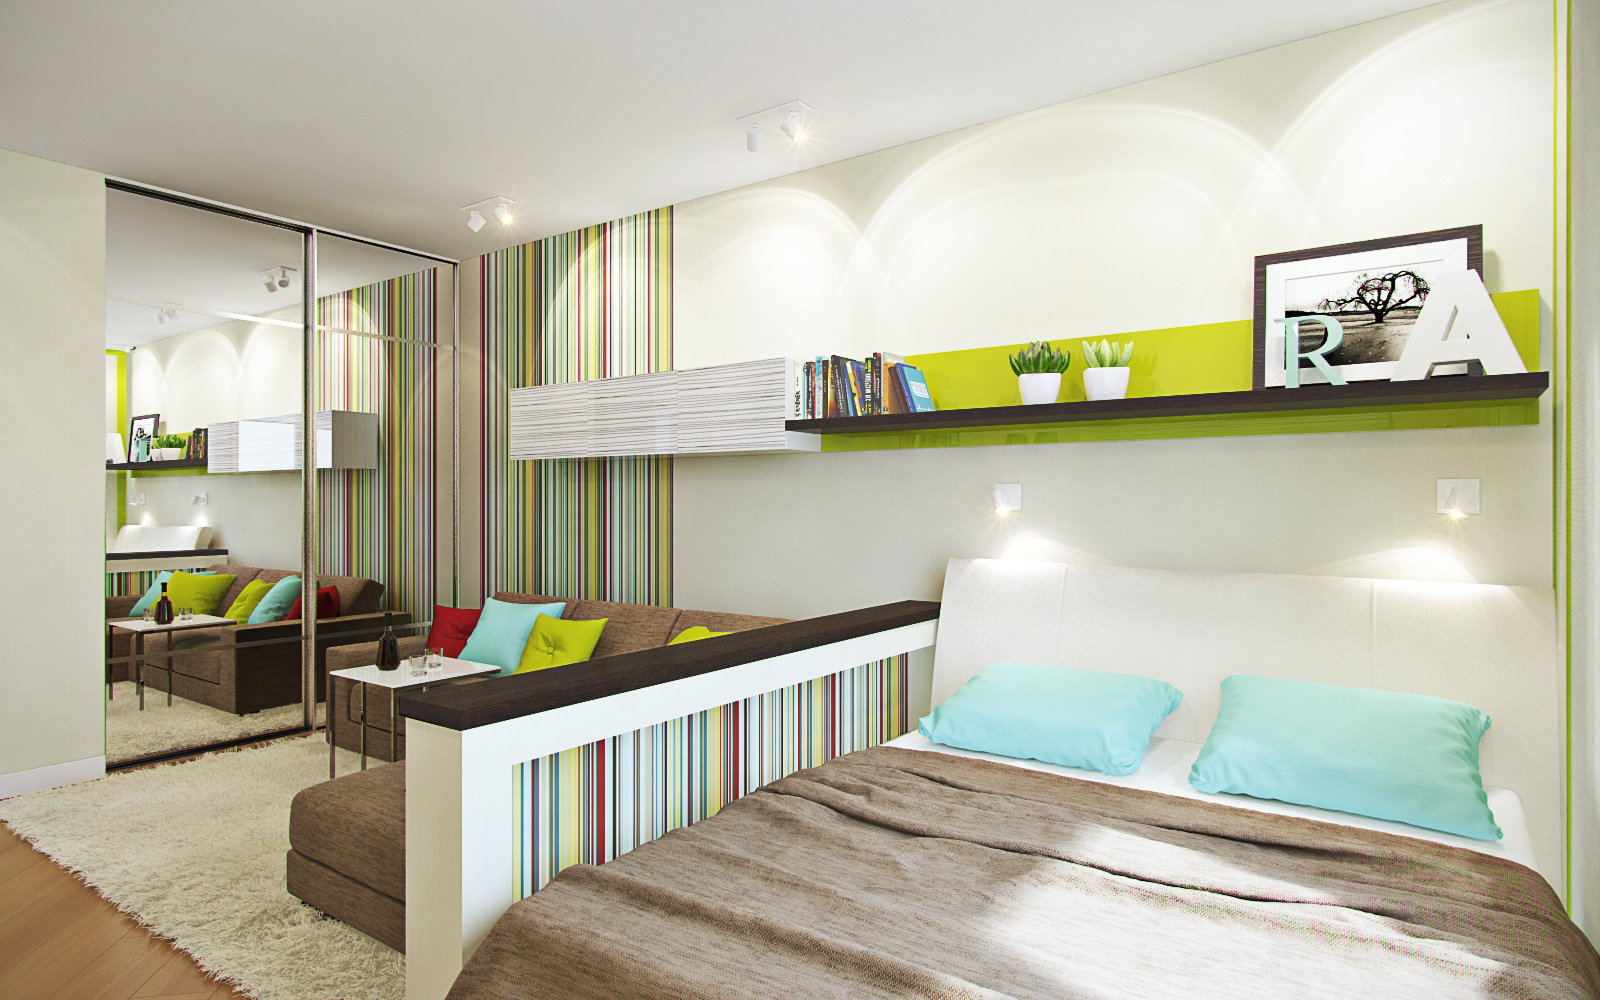 Спальня в однокомнатной квартире в ярком дизайне